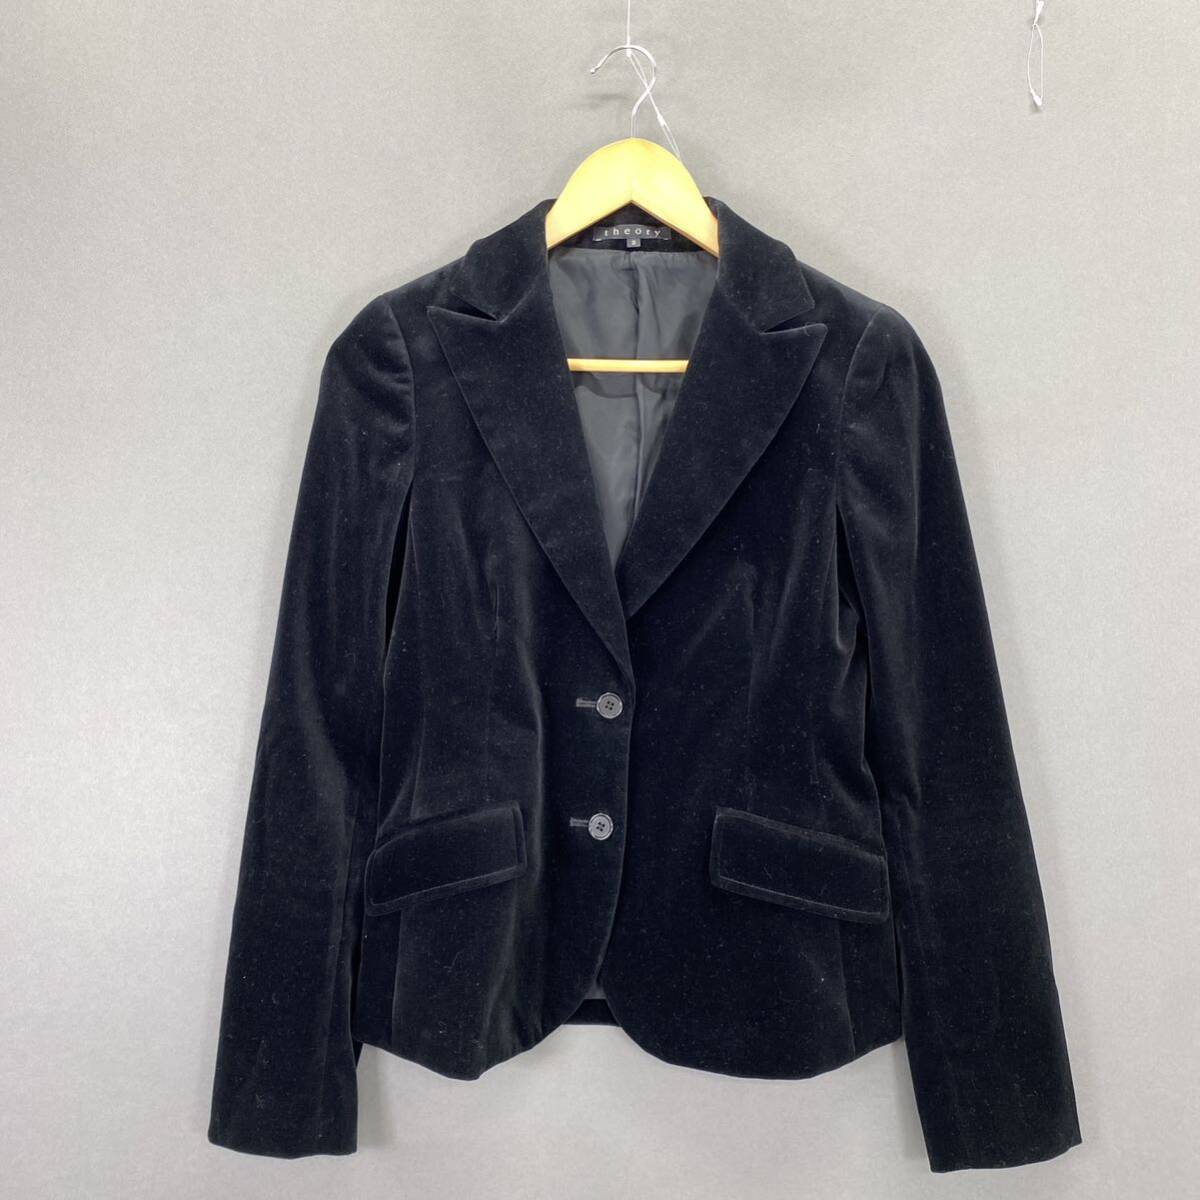 Gd24 《美品》 theory セオリー テーラードジャケット ベロア ジャケット ブラック 2 Mサイズ相当 シングル レディース 女性服